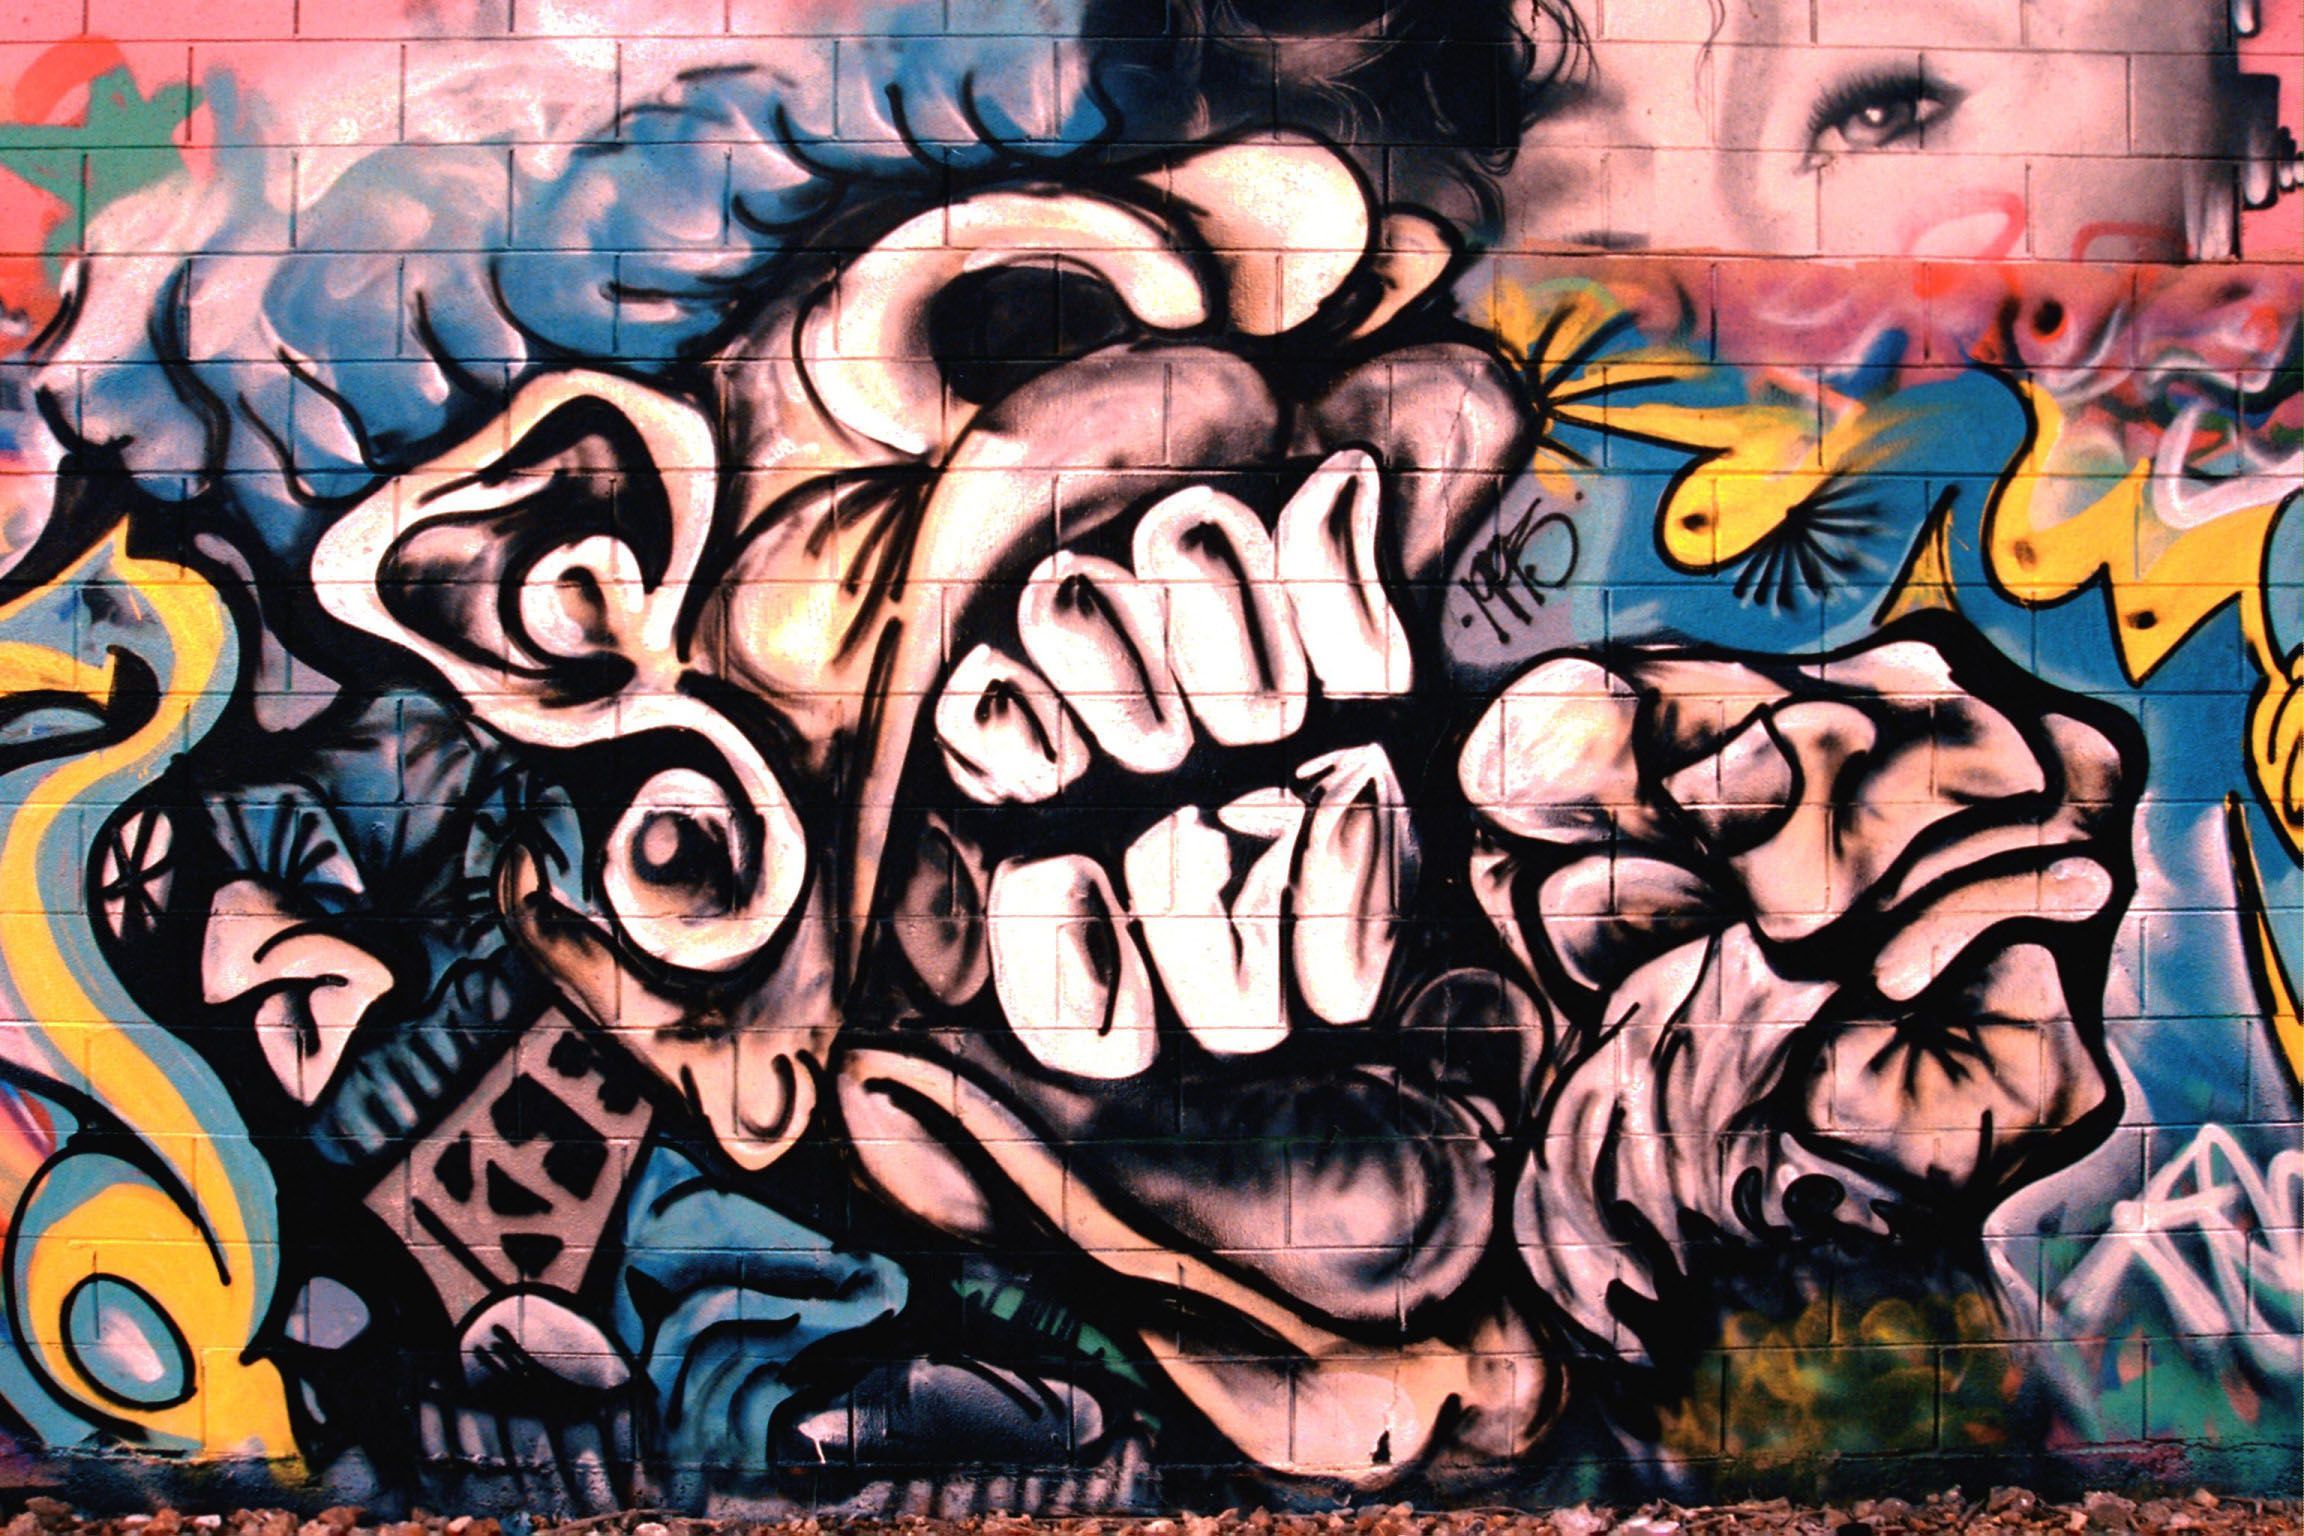 Graffiti Wallpaper (2304×1536). Graffiti Wallpaper, Best Graffiti, Graffiti